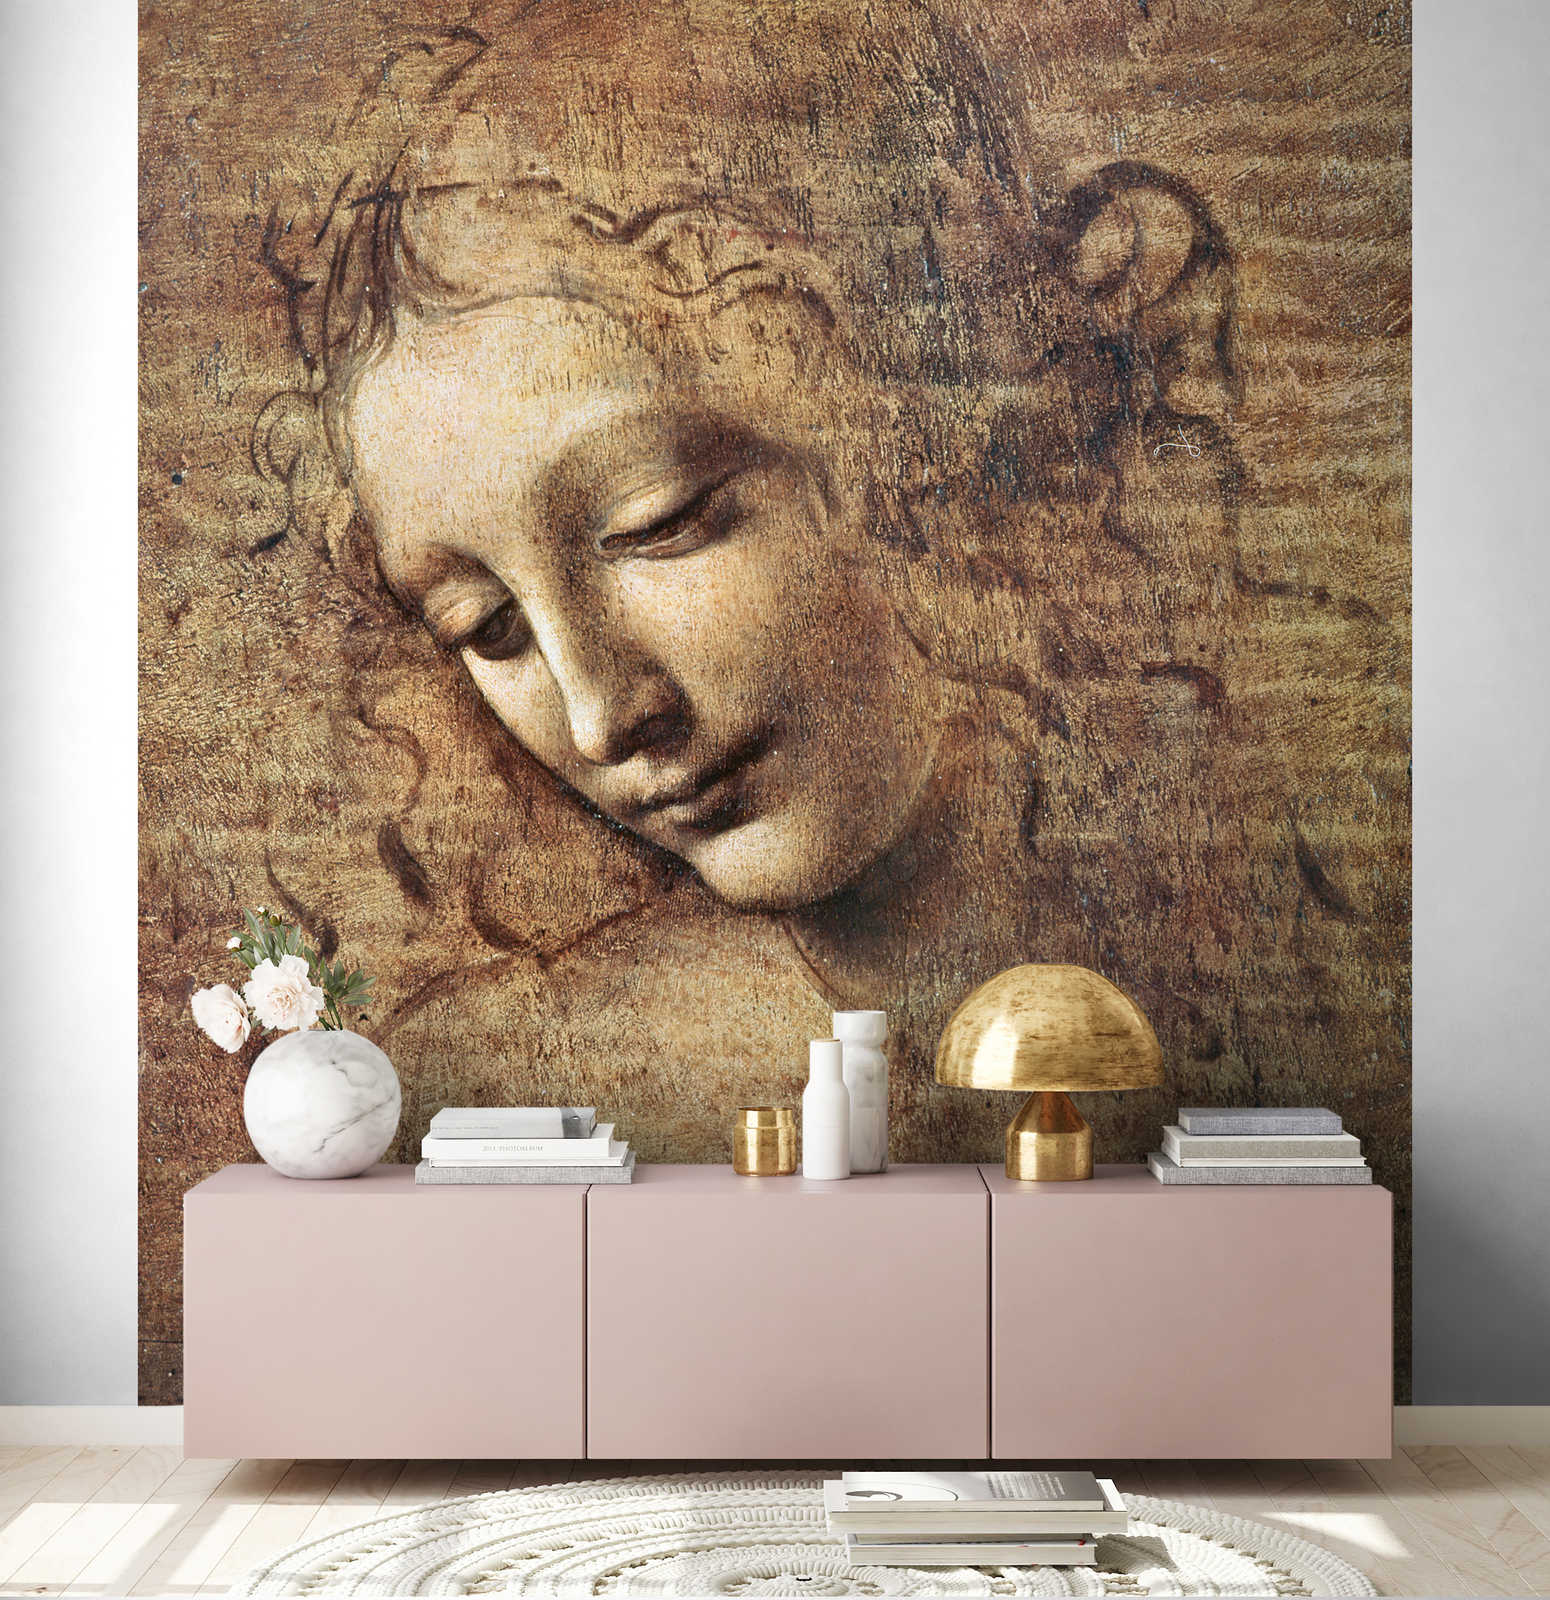             Mural "Cabeza de mujer joven con el pelo revuelto" de Leonardo da Vinci
        